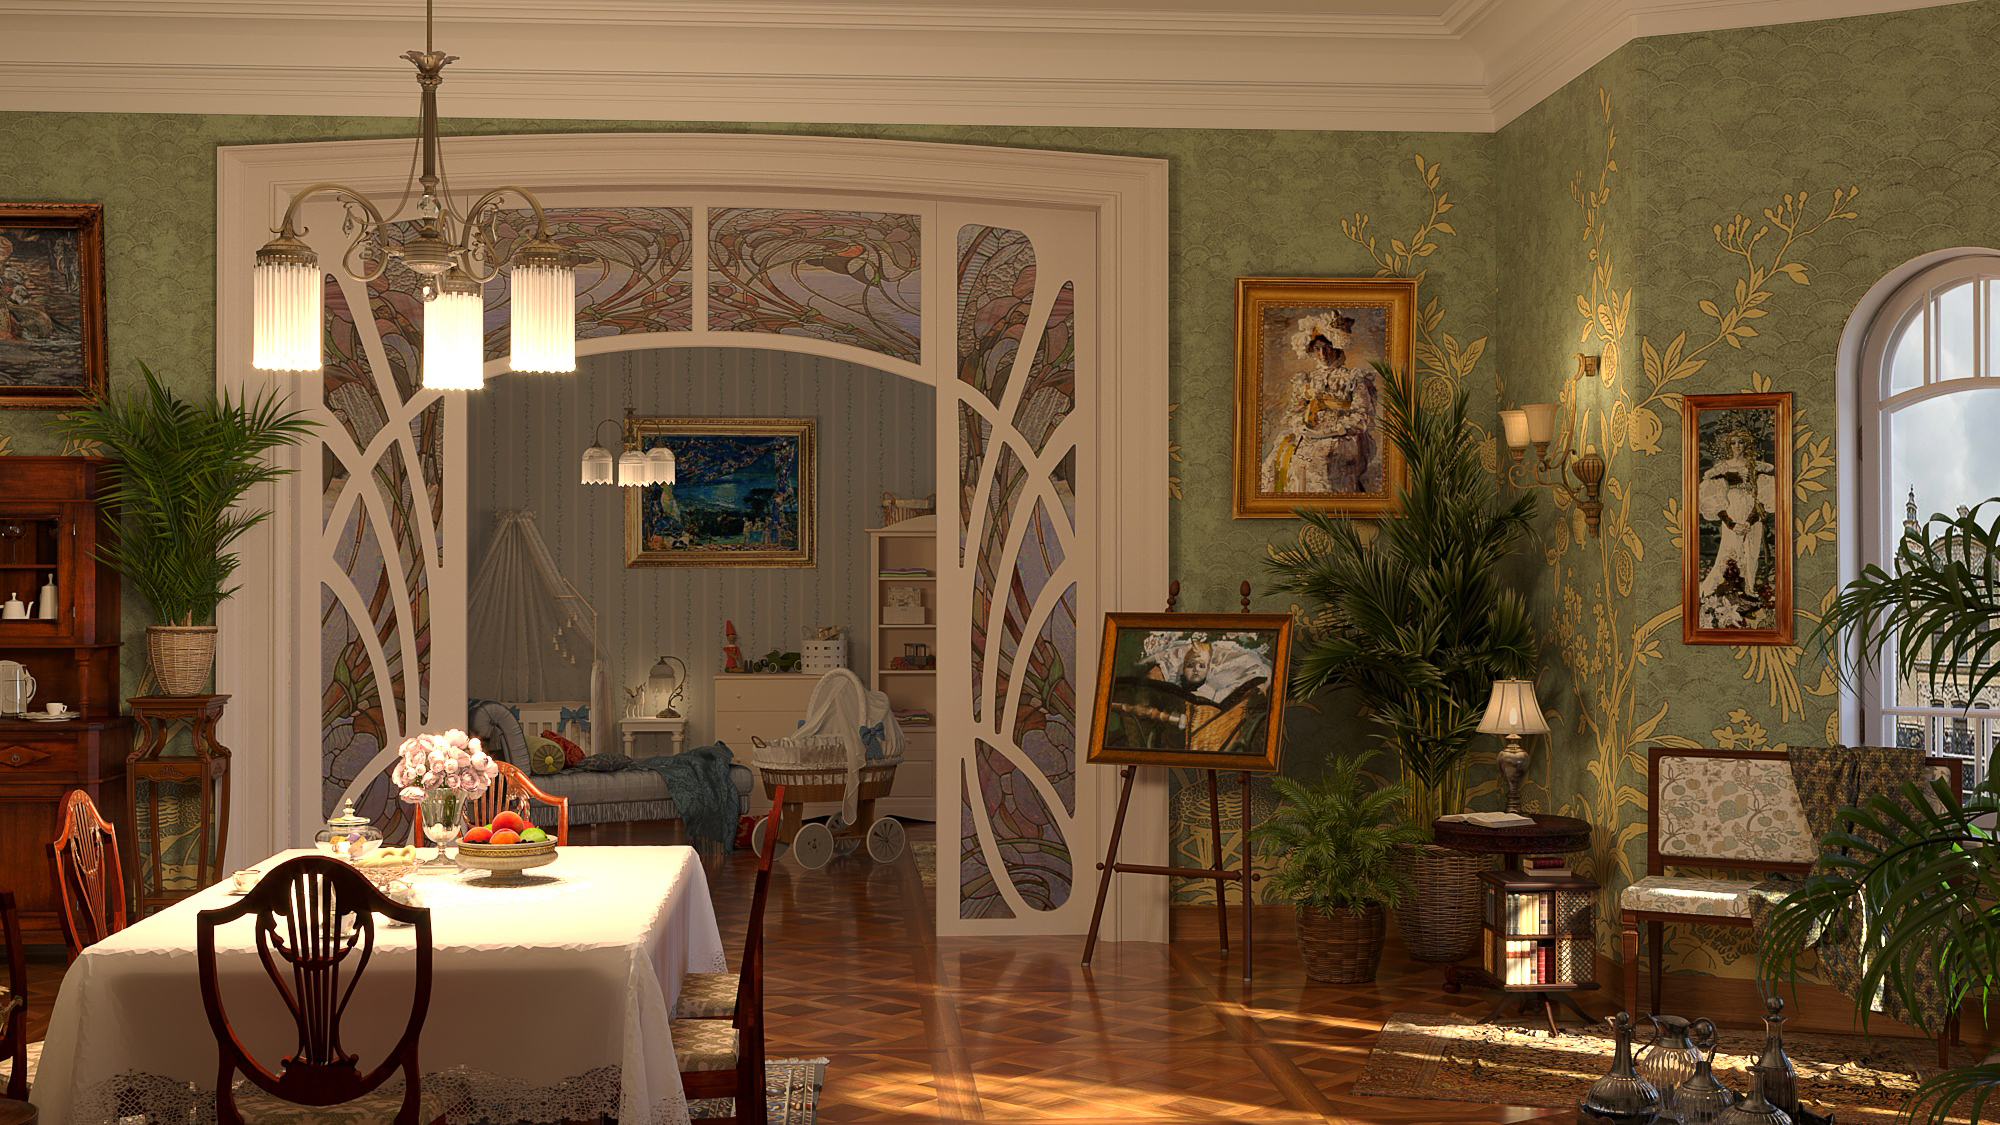 Schizzo dello scenario "Appartamento di Vrubel" in 3d max corona render immagine